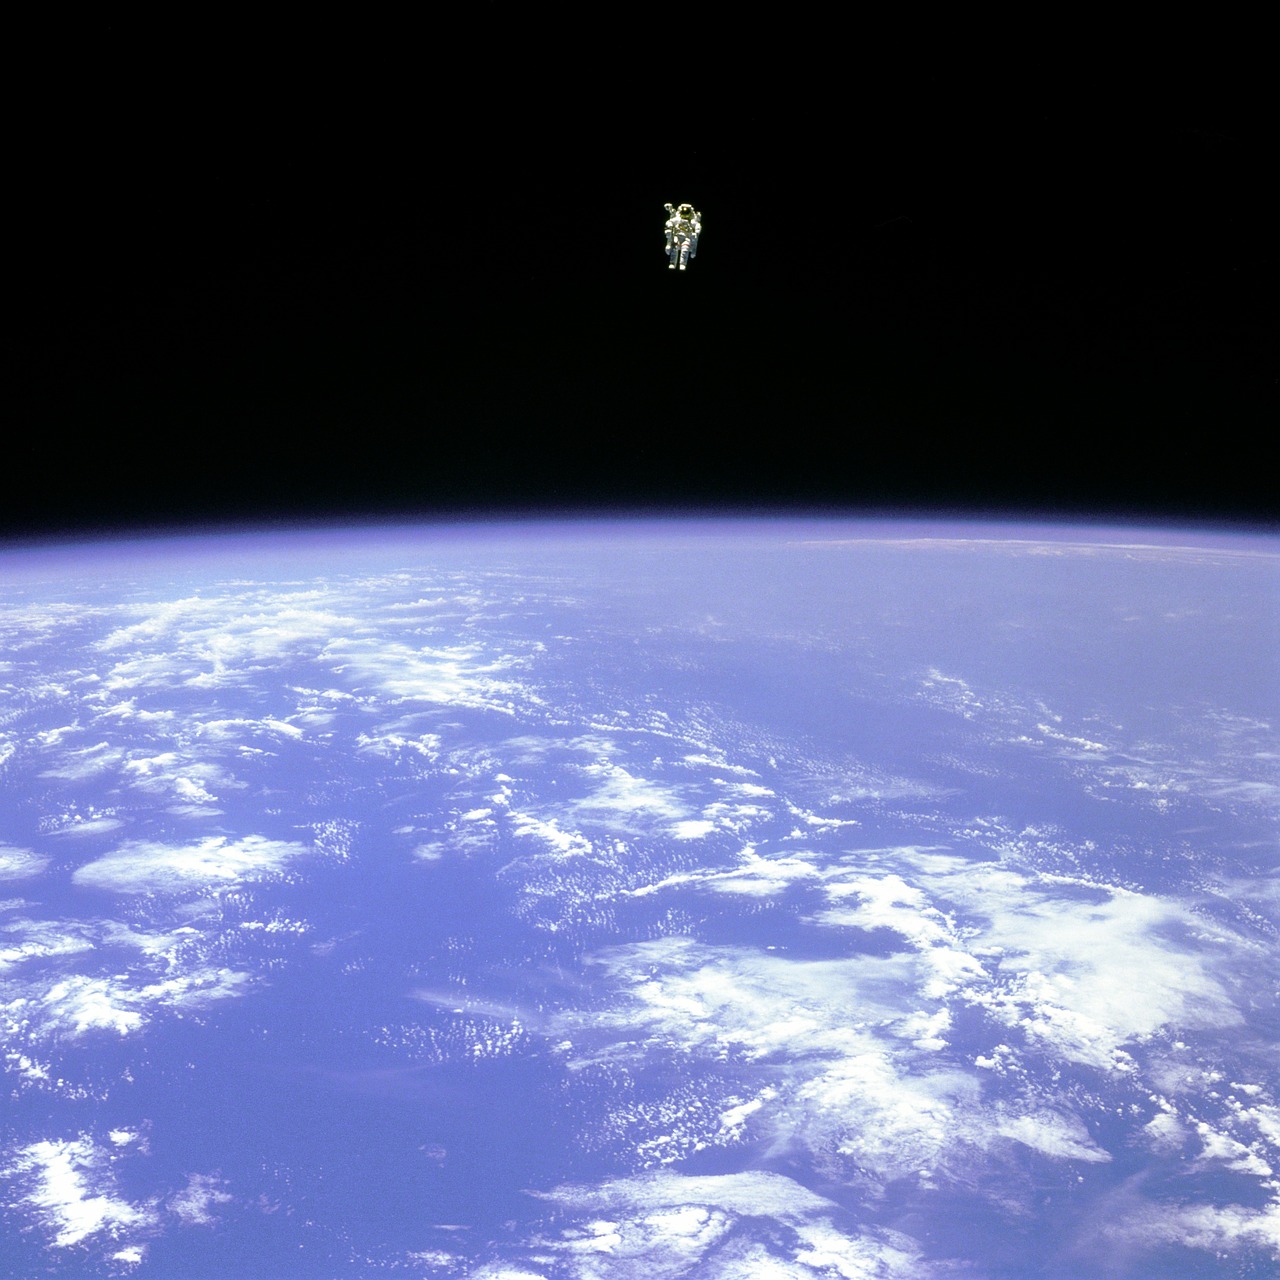 space nasa astronaut free photo